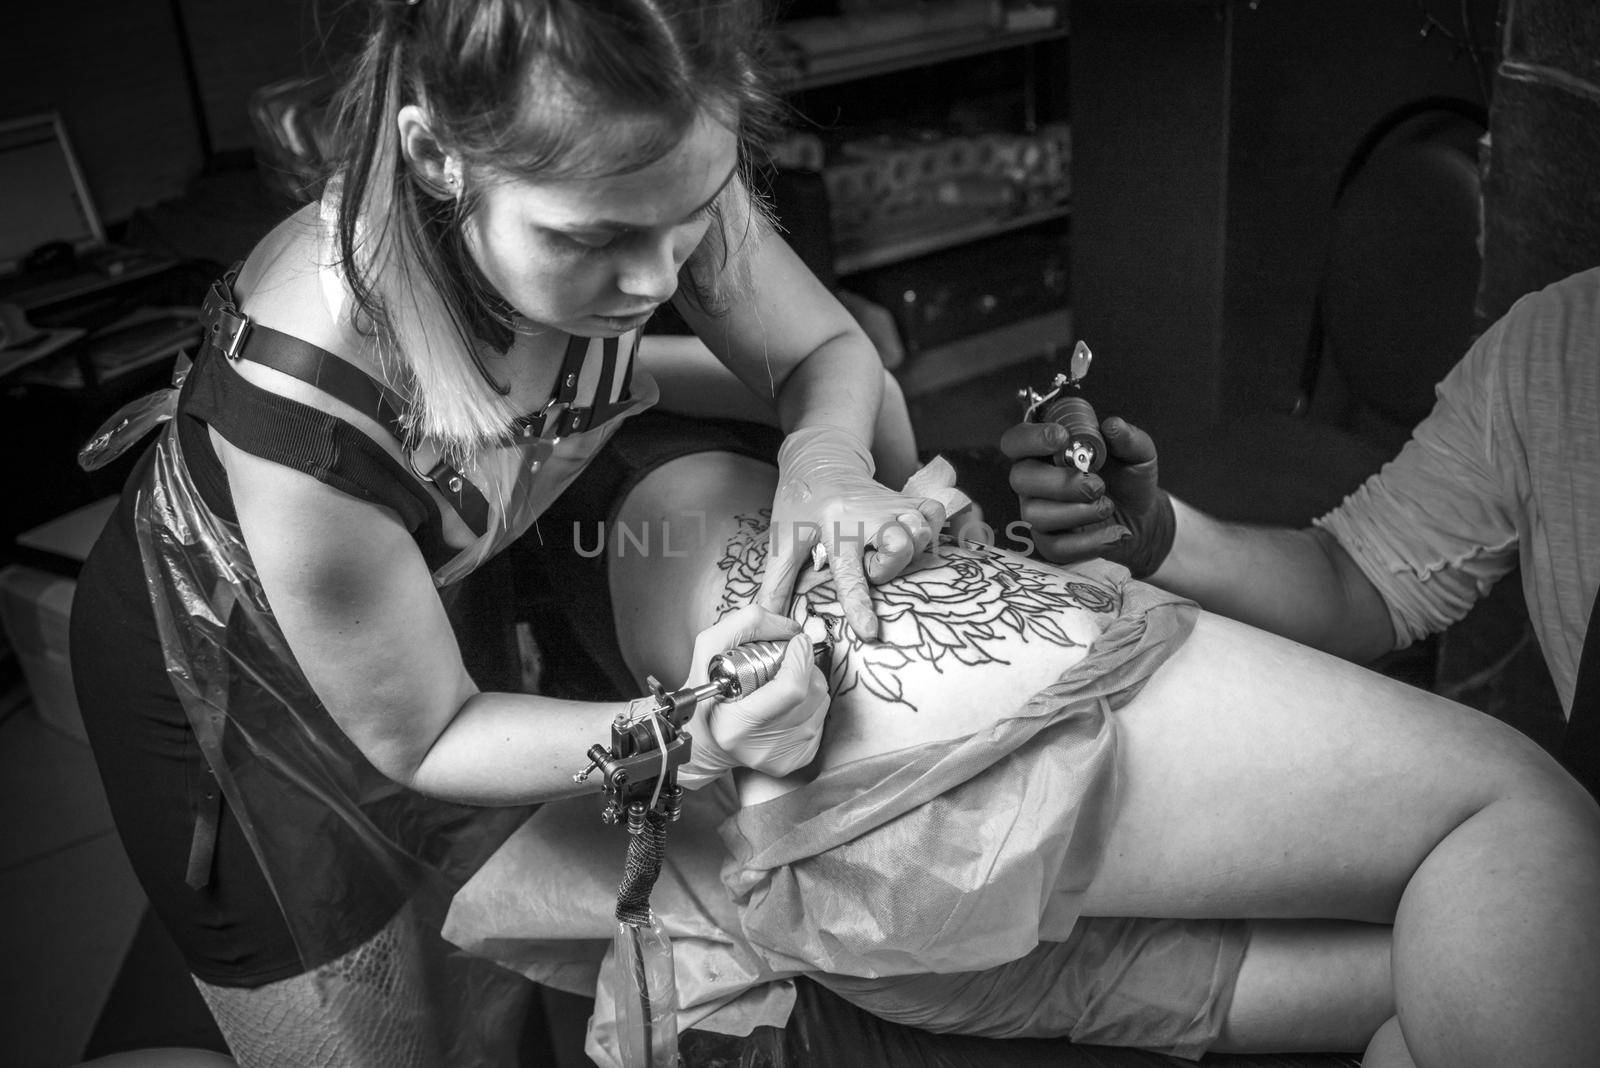 Tattooer demonstrates process of making a tattoo tattoo studio by Proff